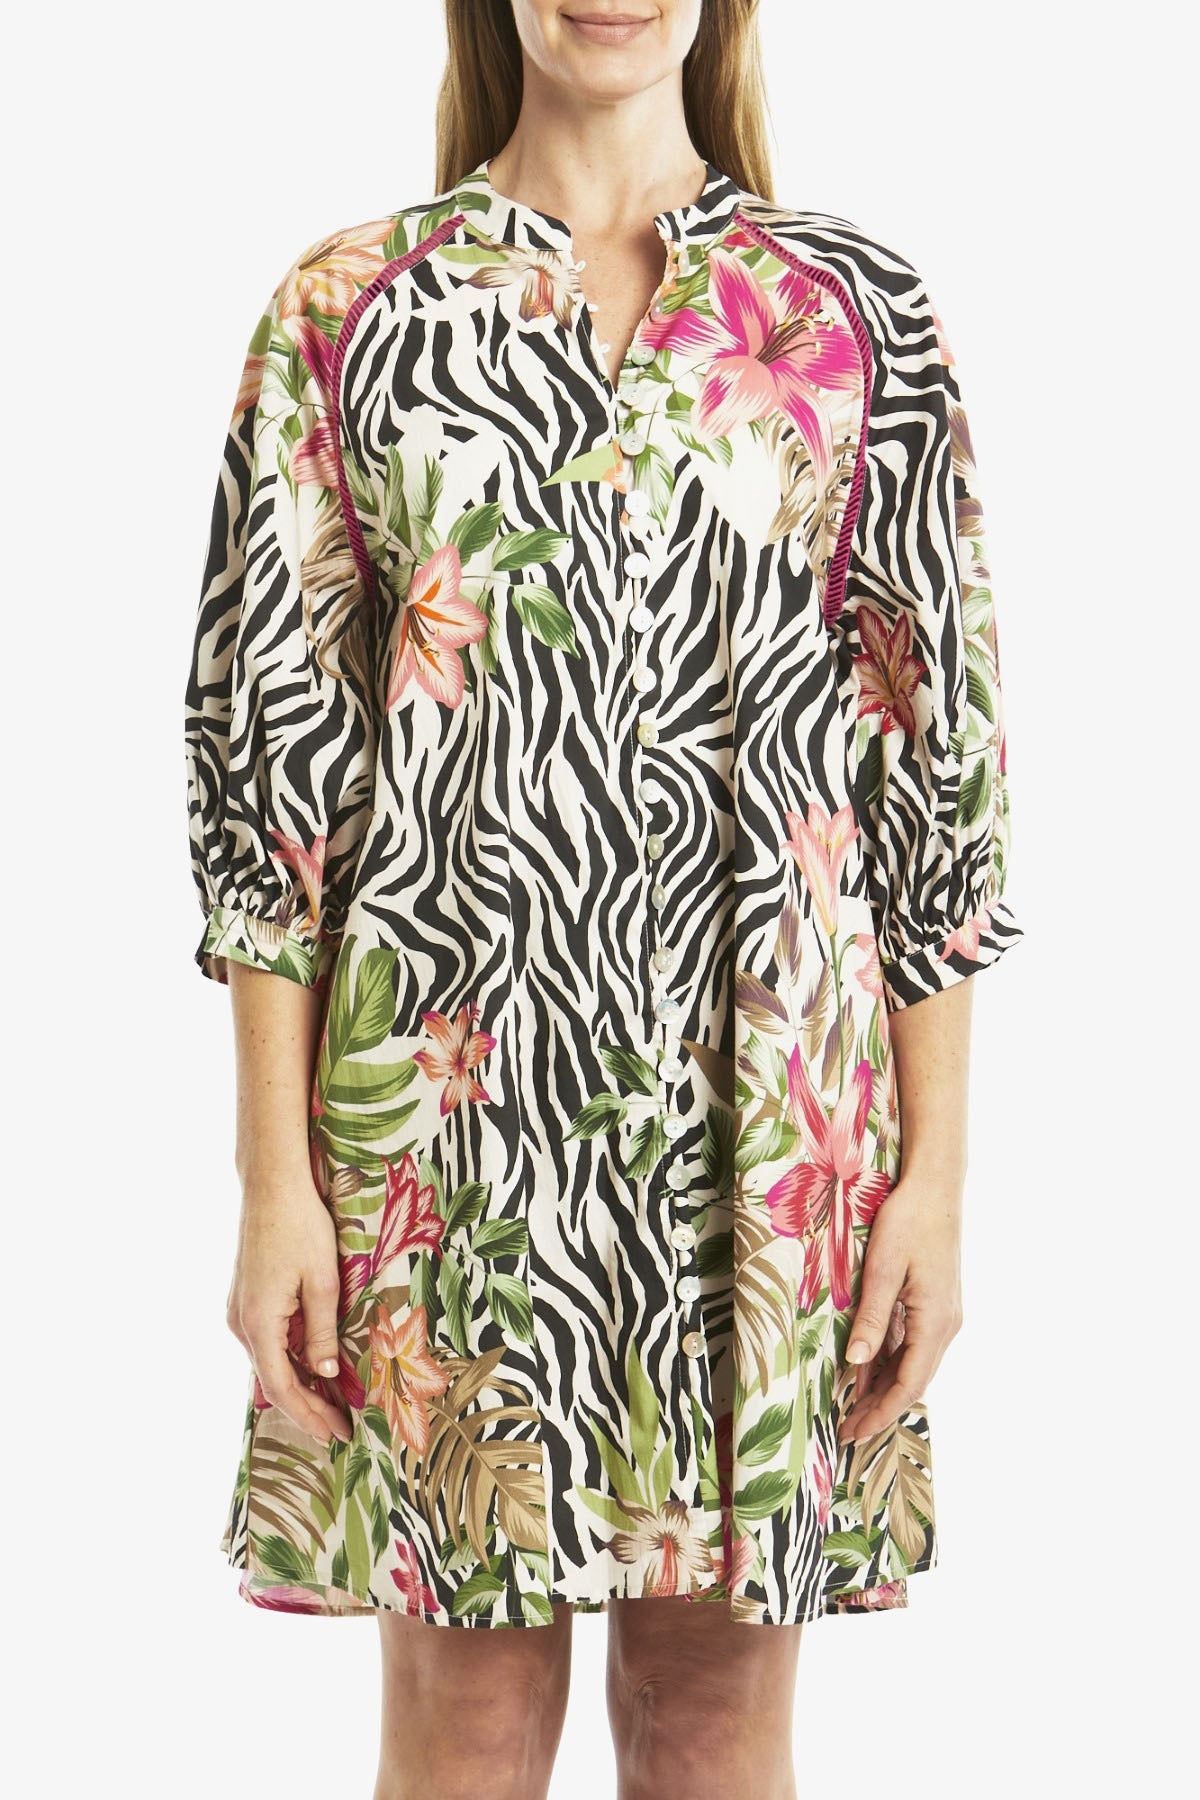 Tropical Animal Print Dress